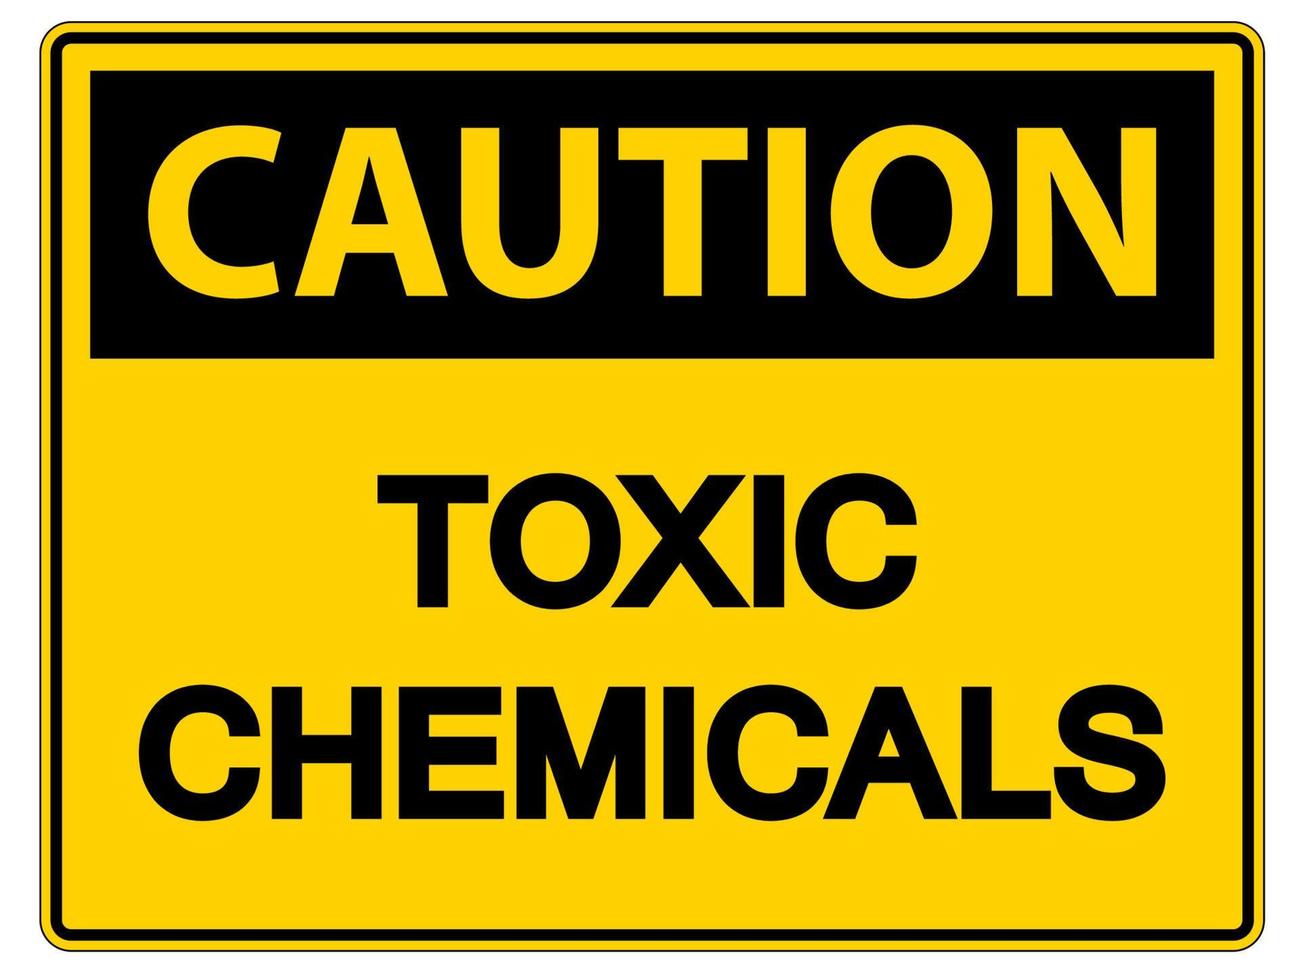 försiktighet giftiga kemikalier symbol tecken på vit bakgrund vektor